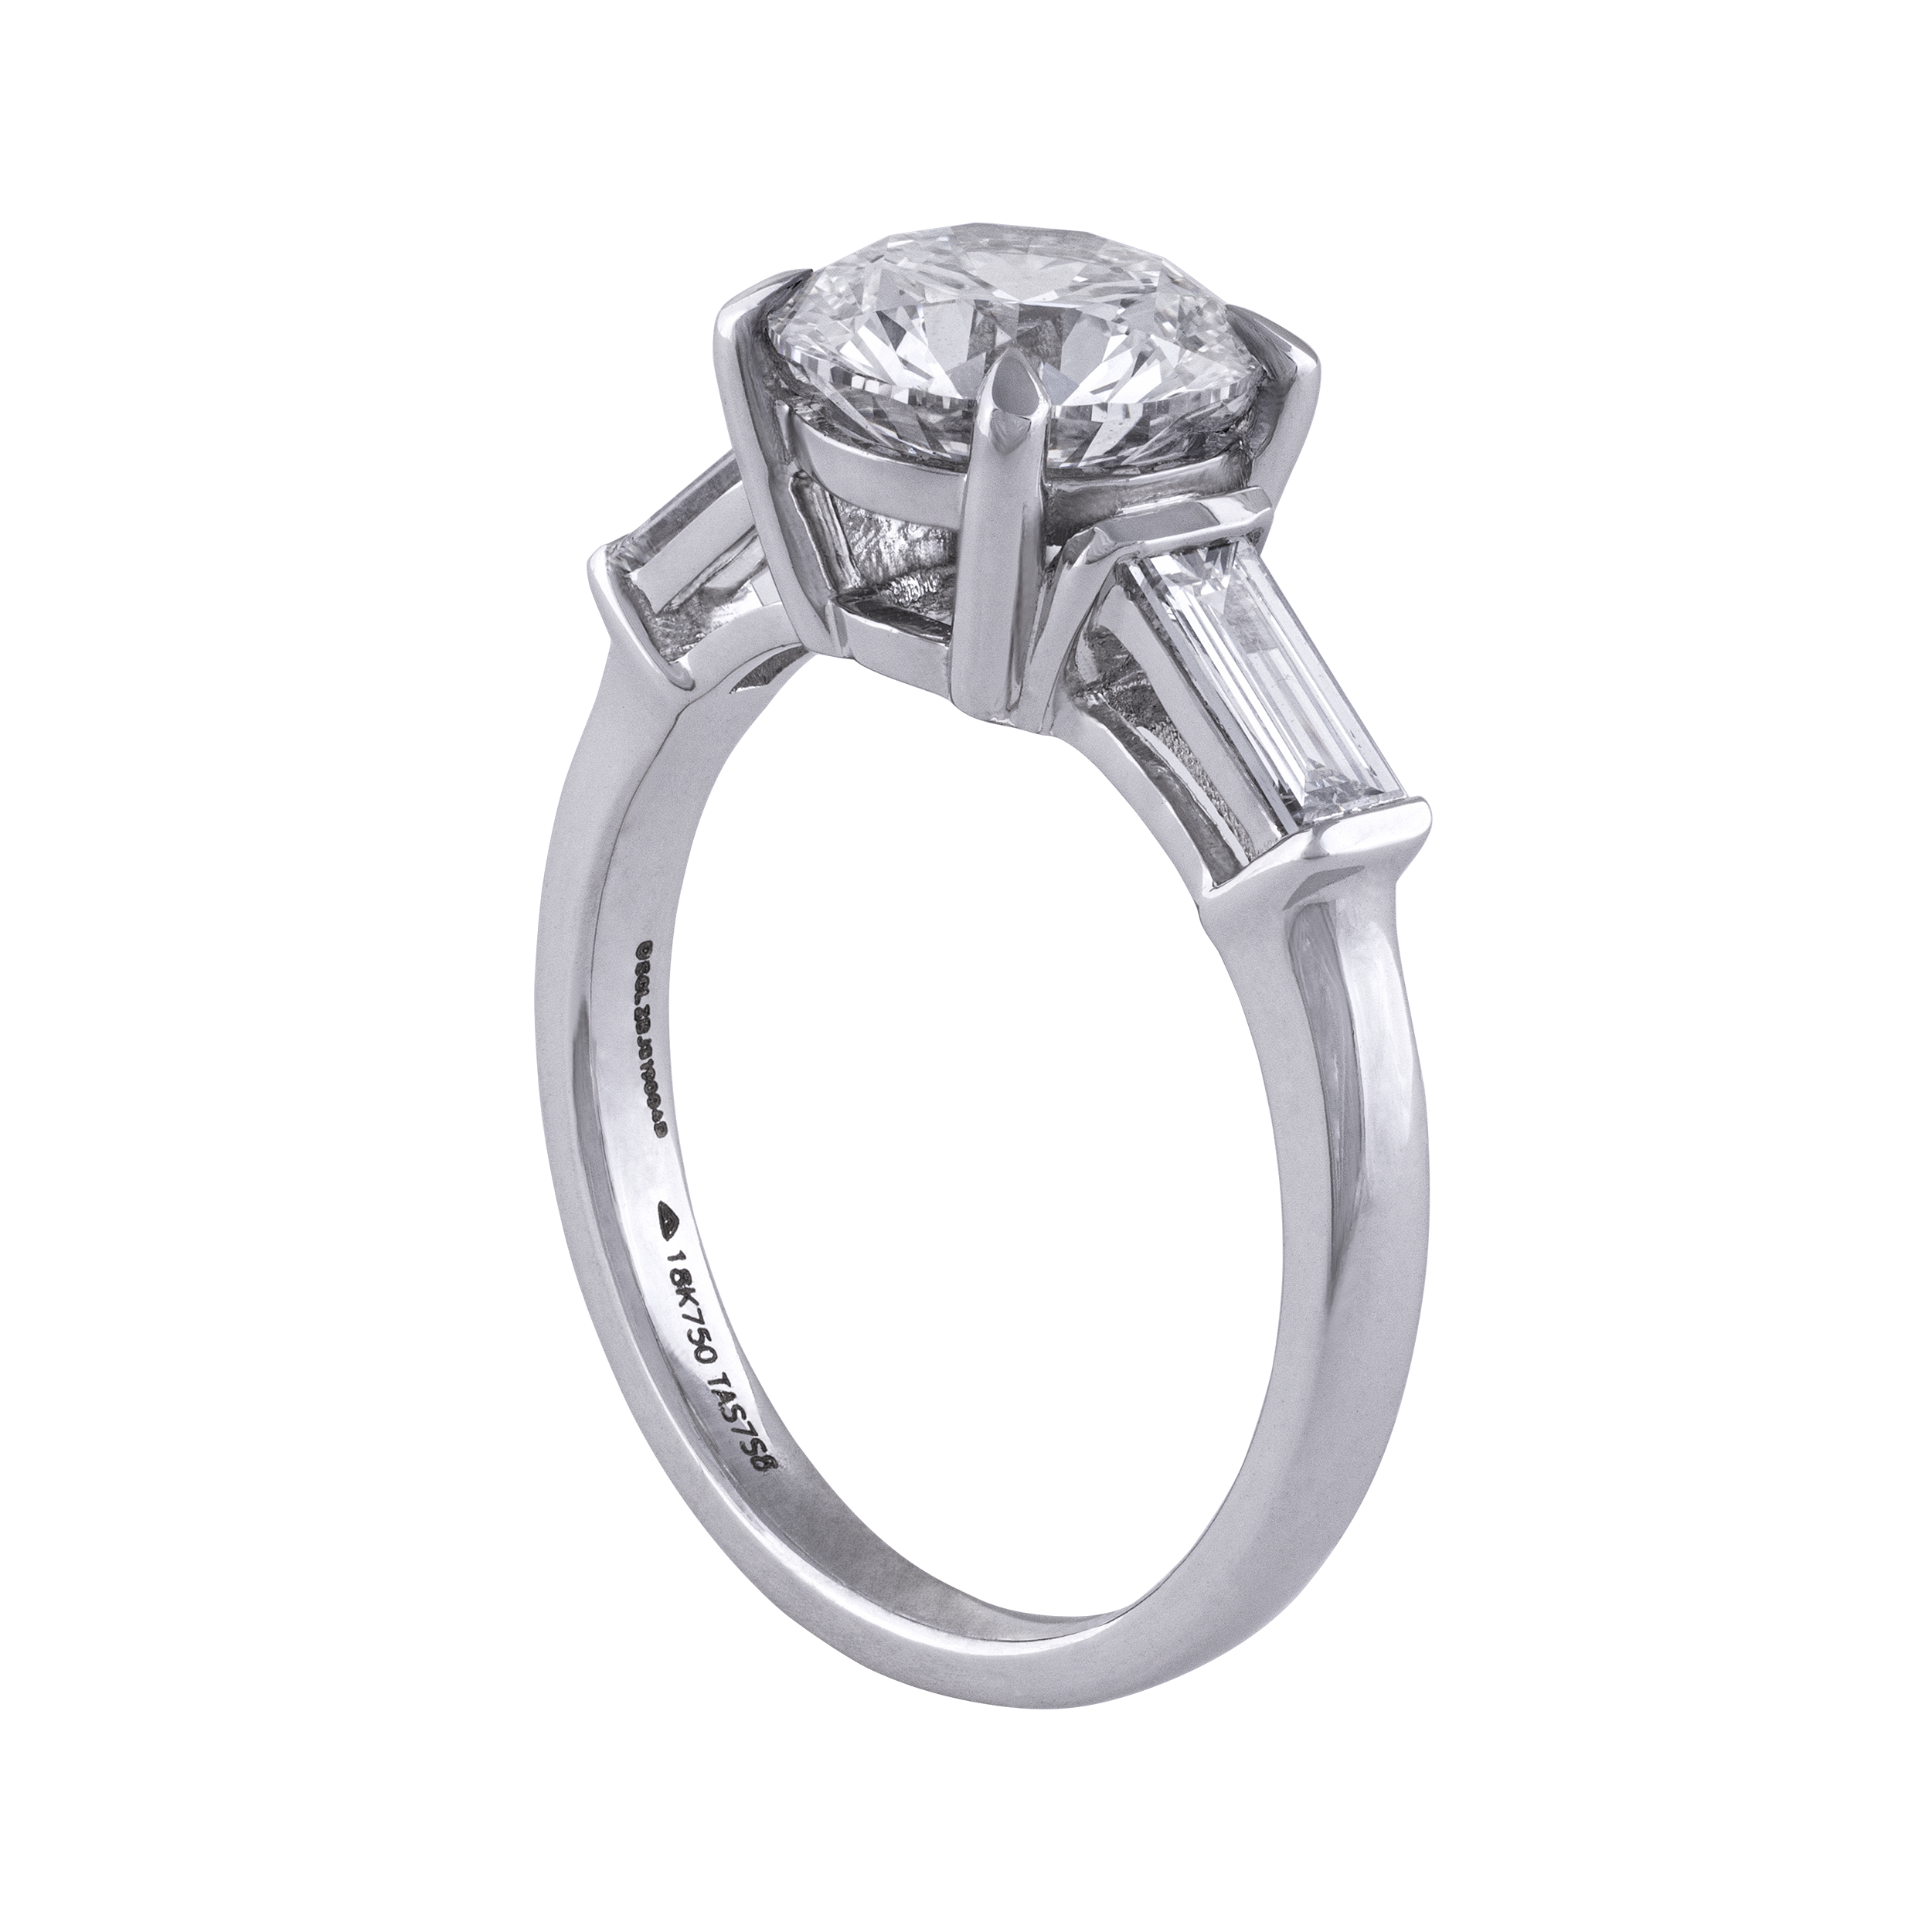 Solitaire Lab Grown Diamond Ring | SKU: 0019332017